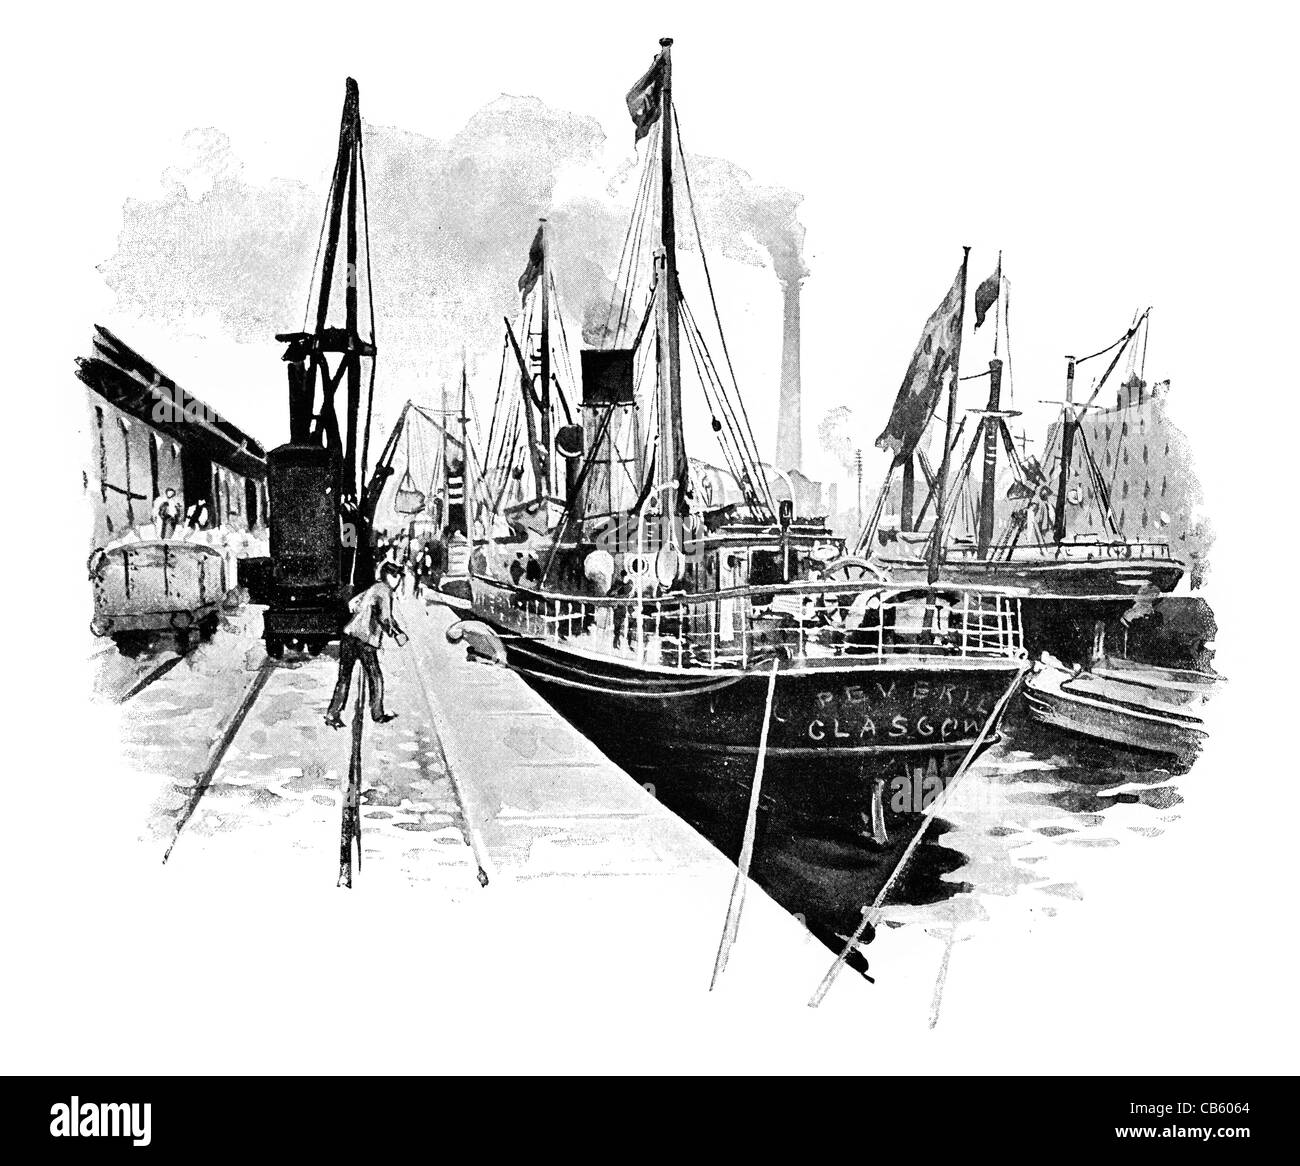 Laden in Pomona Dock Manchester Dampfer Schiff Ship Canal Fähranleger Hafen Kai festmachen Passagier Schiff Boot Stockfoto